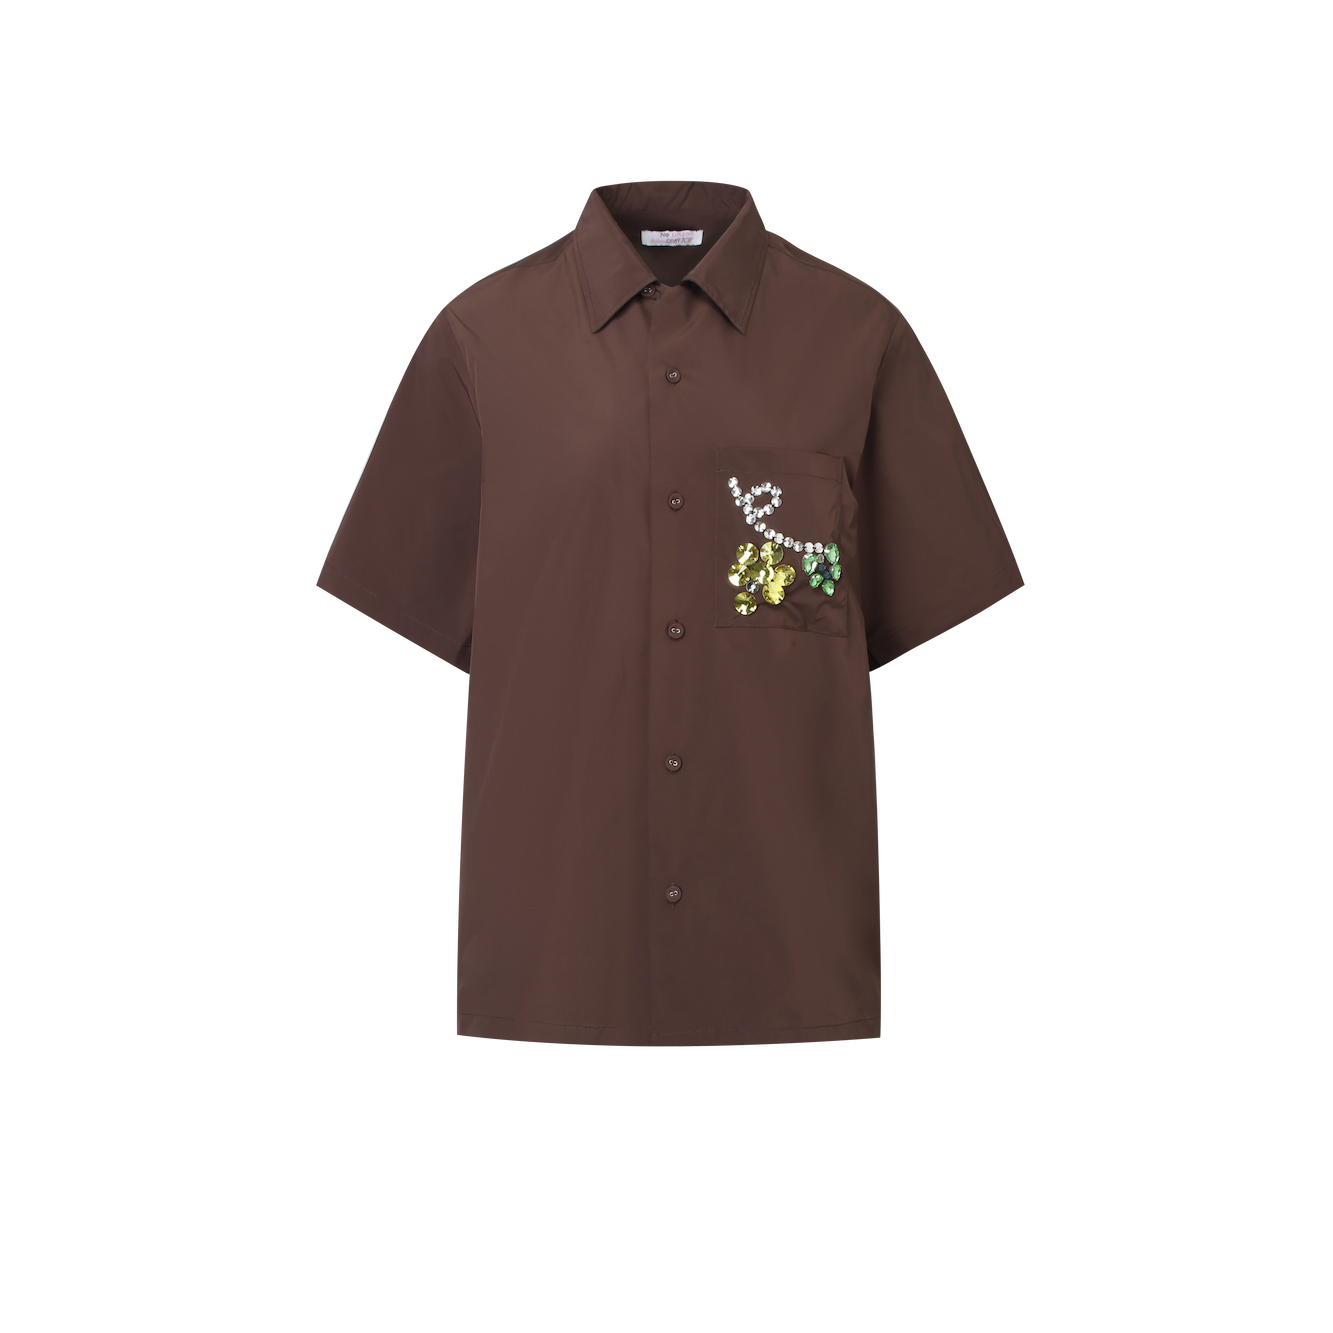 Unisex Brown Grape Rhinestone Shirt